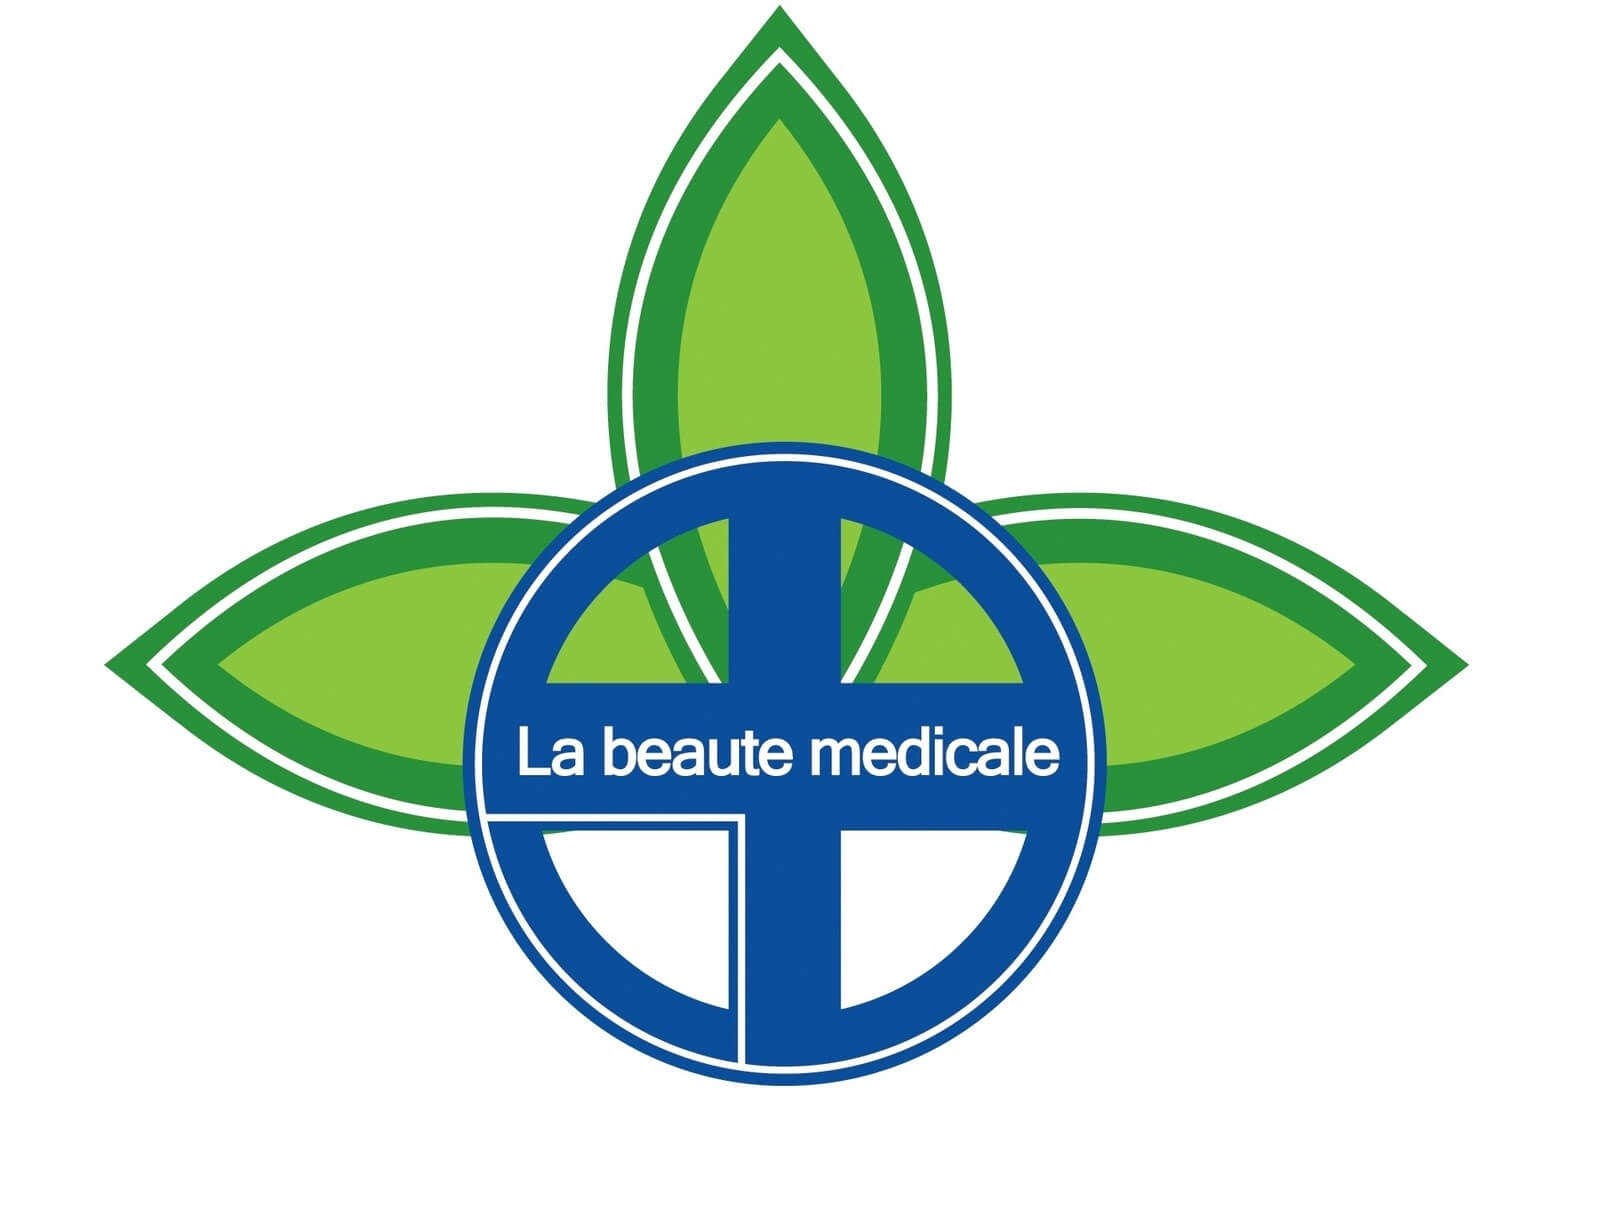 косметика La beaute medicale логотип